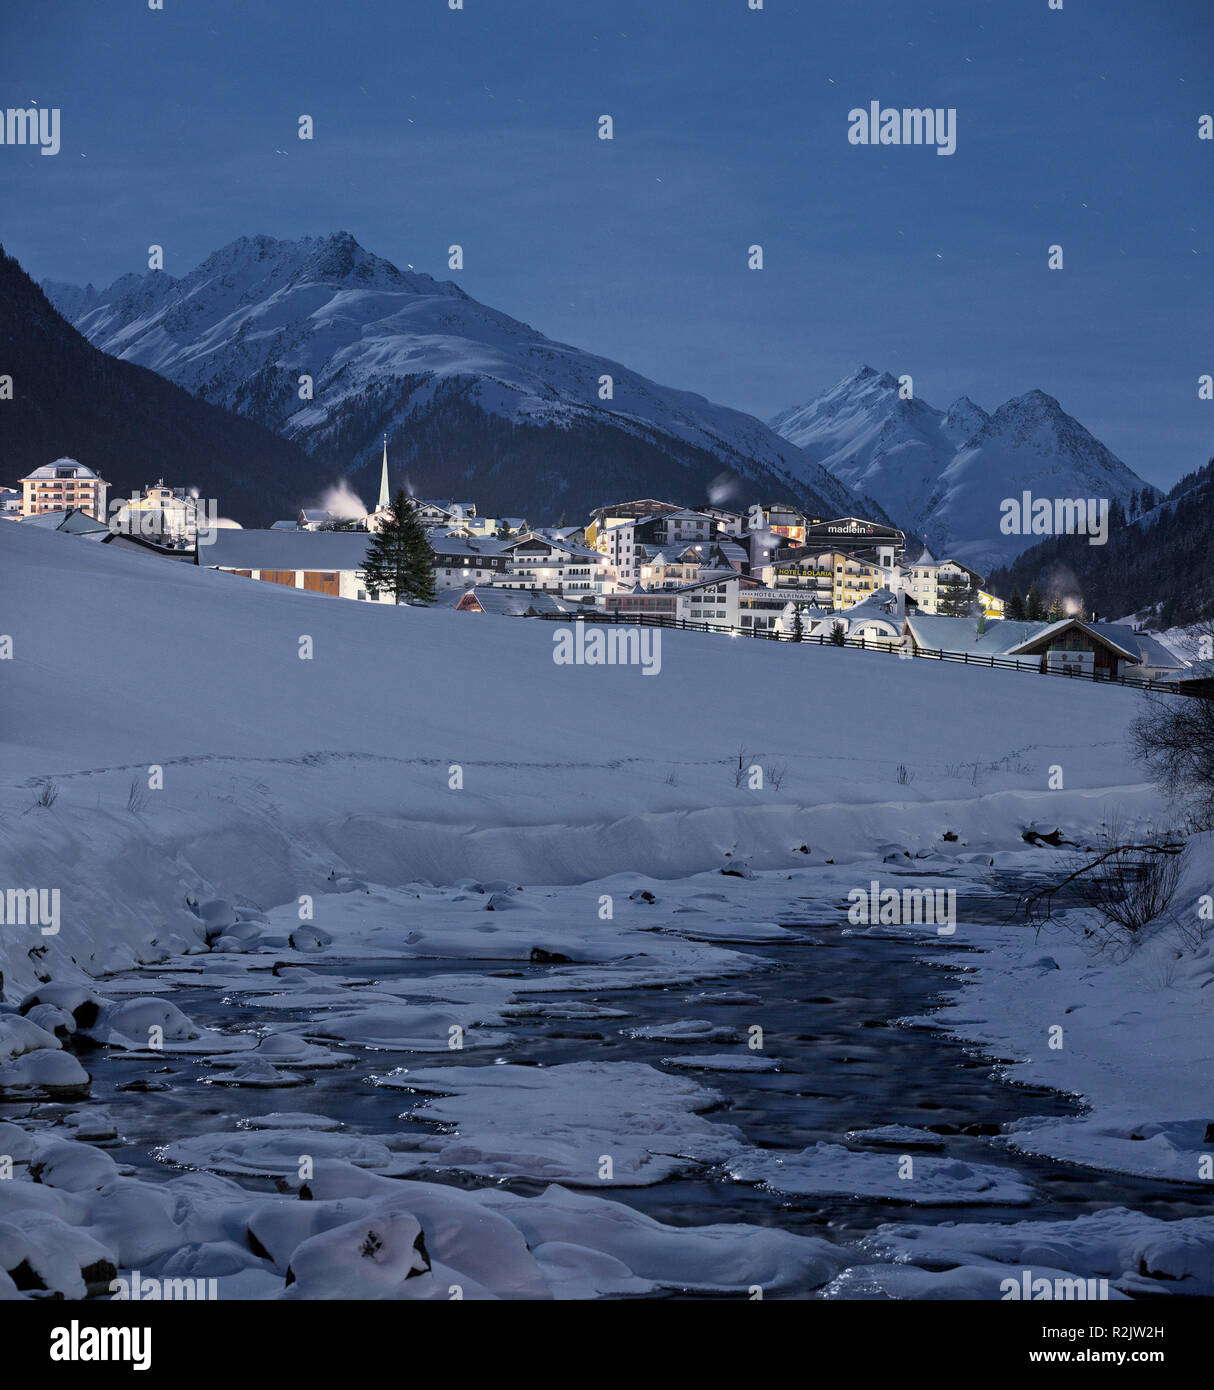 Autriche, Tyrol, Ischgl, nuit de pleine lune Banque D'Images